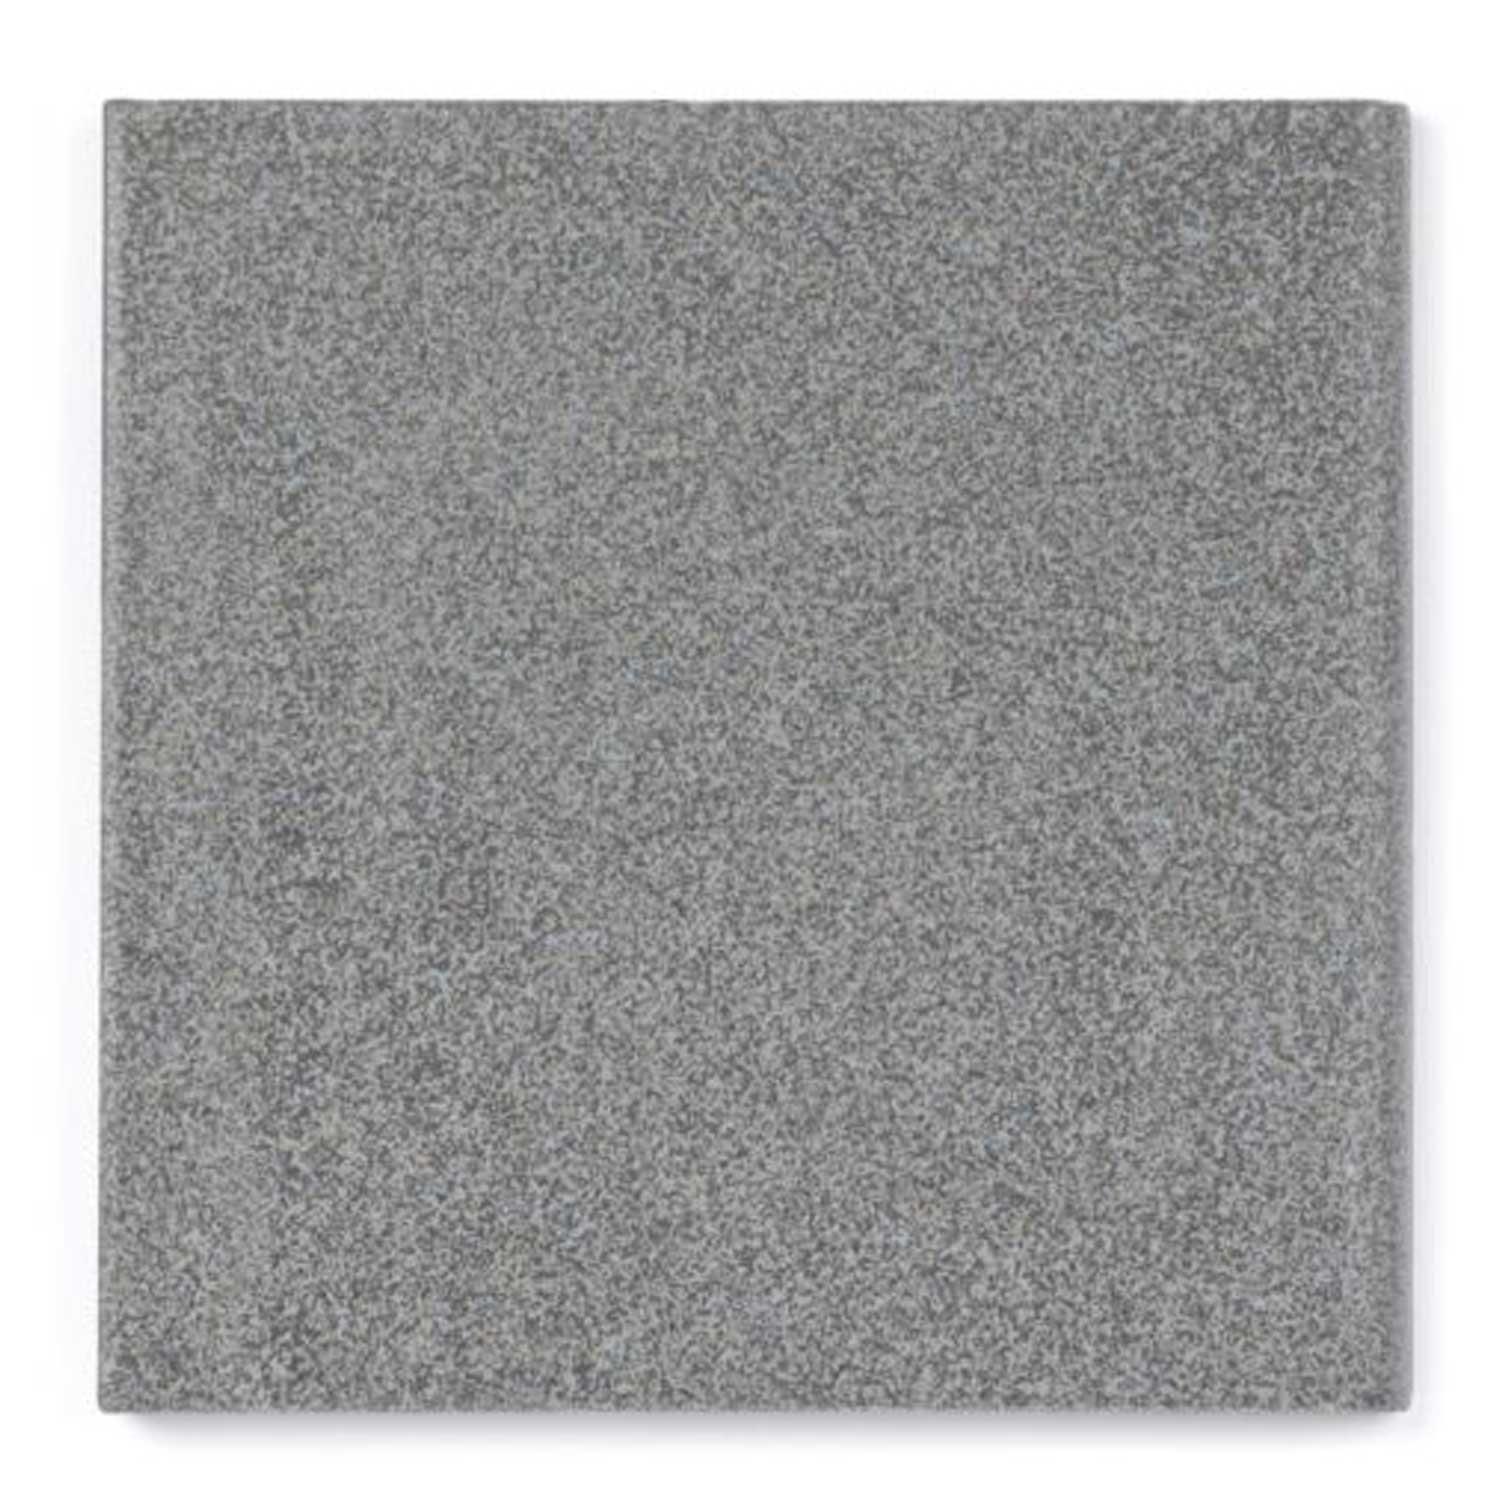 Dorset Dark Grey Round Edge (RE) Vitrified Porcelain Floor Tile 150x150mm